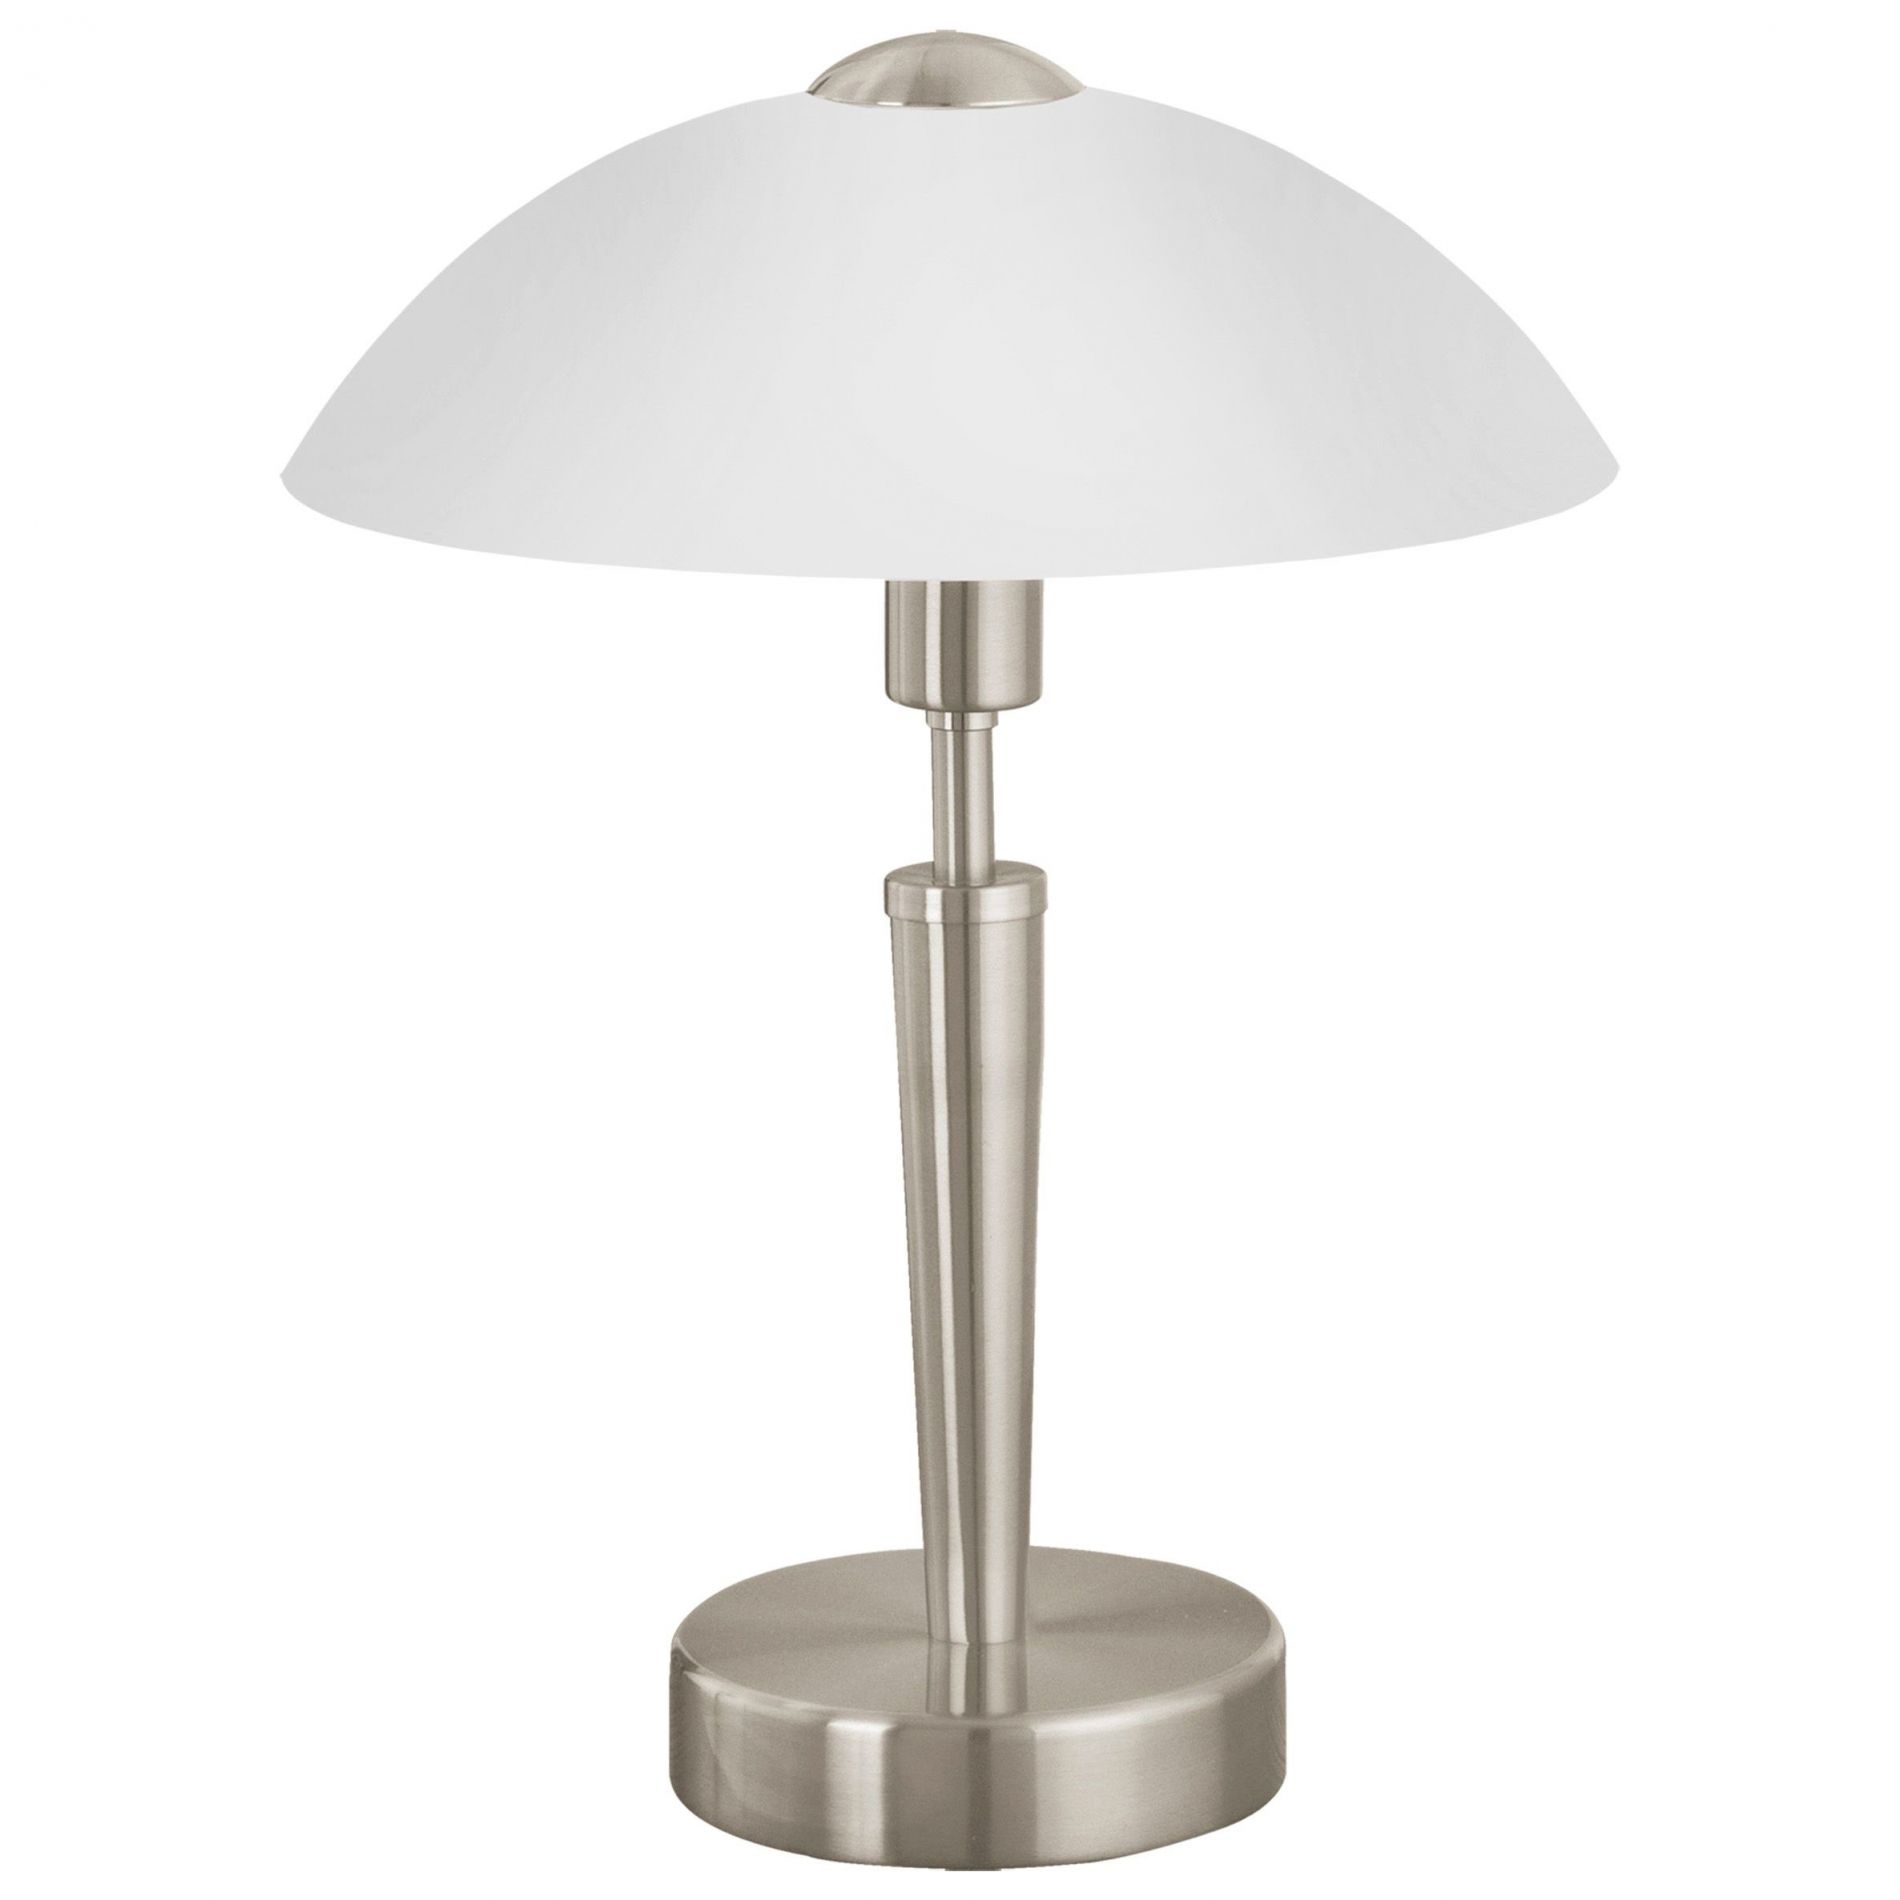 Les 3 meilleures fonctionnalités d'une lampe de chevet tactile –  LampesDeChevet